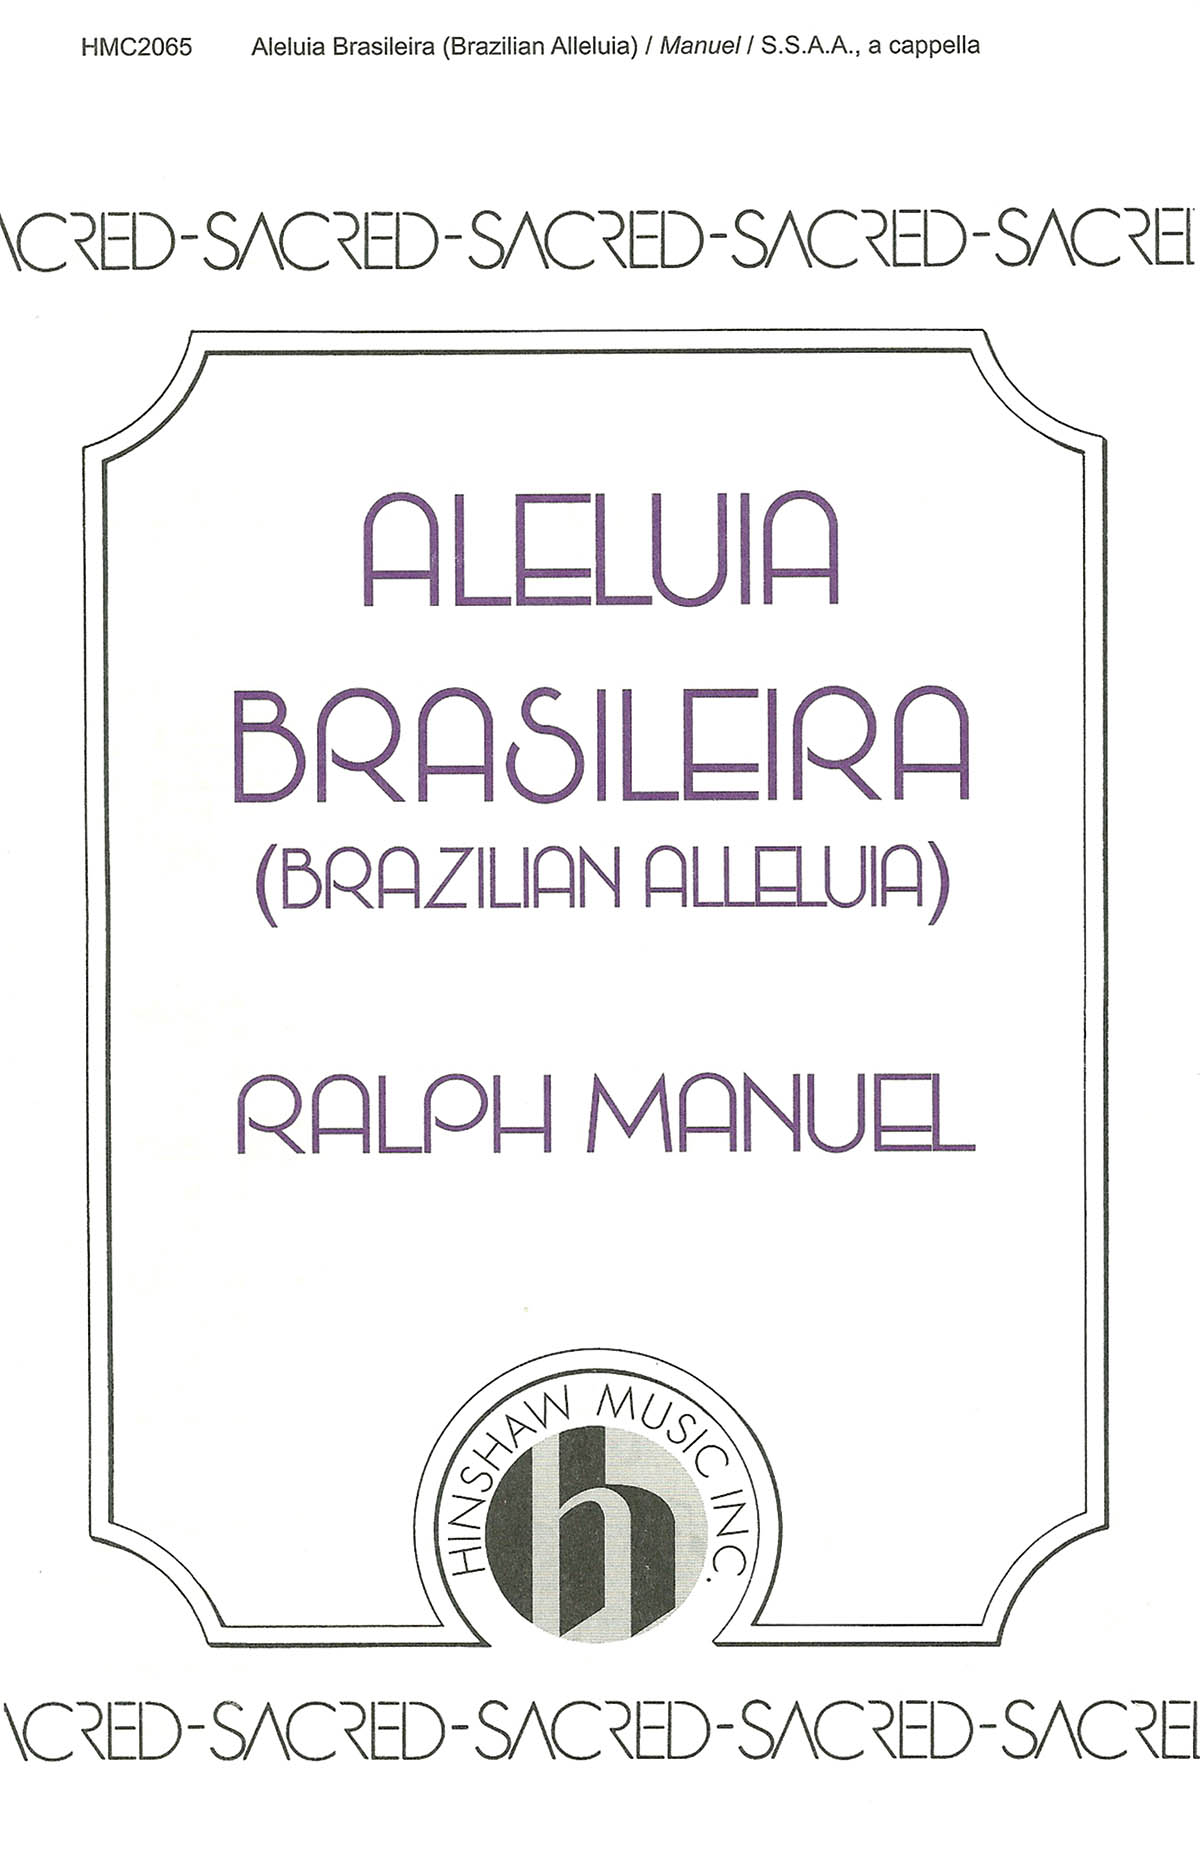 Brazilian Alleluia (Aleluia Brasileira)